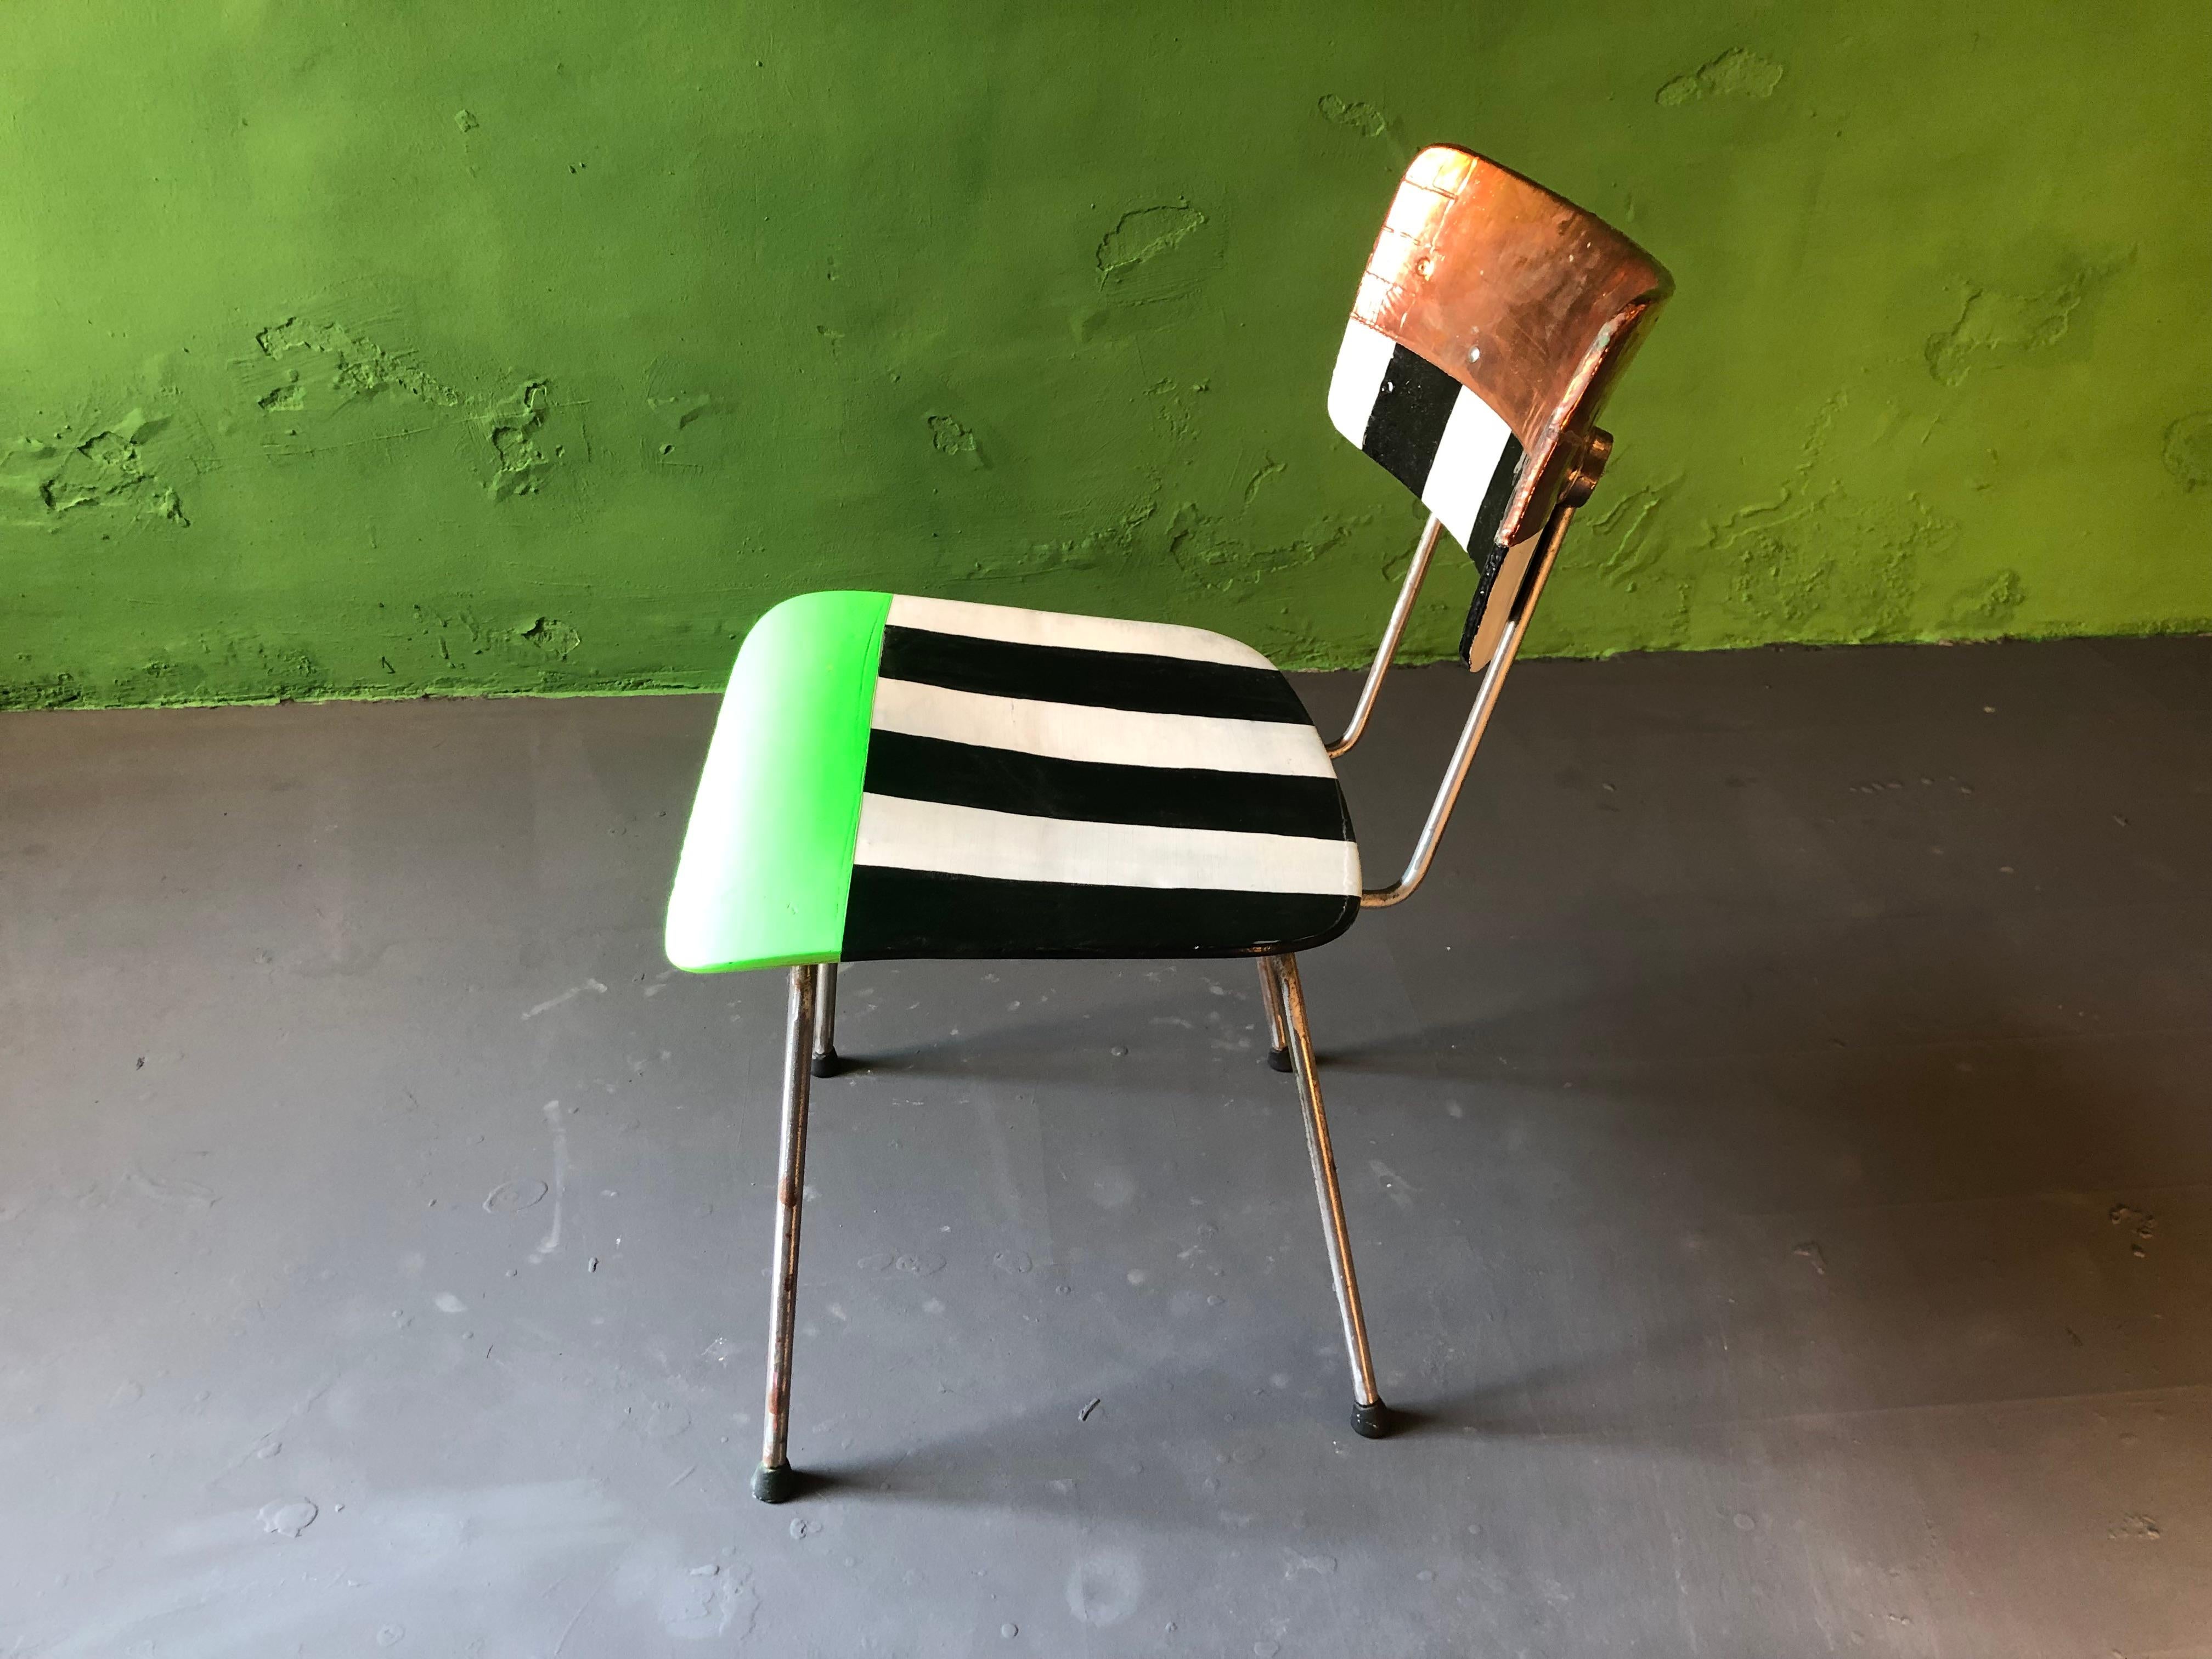 Wim Rietveld-Stuhl, umgestaltet von Markus Friedrich Staab 2021, handbemalt, mit Hochglanzlack mehrfach lackiert, verzinkte Rückenlehne.
Wie andere holländische Designer ließ sich Rietveld von dem Ehepaar Eames inspirieren, was man in diesem Werk